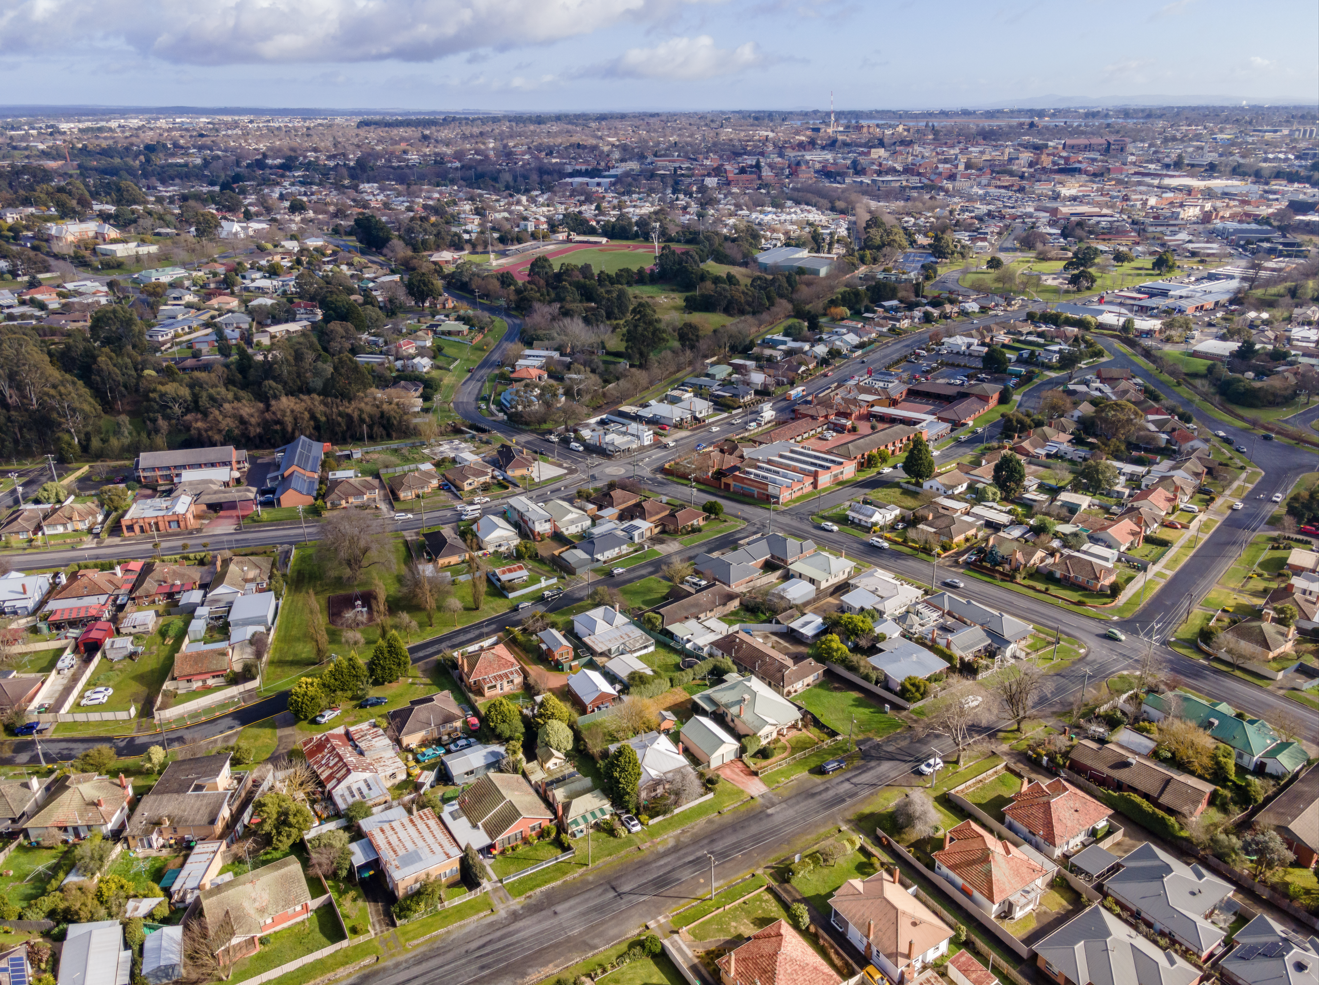 Generic image of residential area of Ballarat aerial